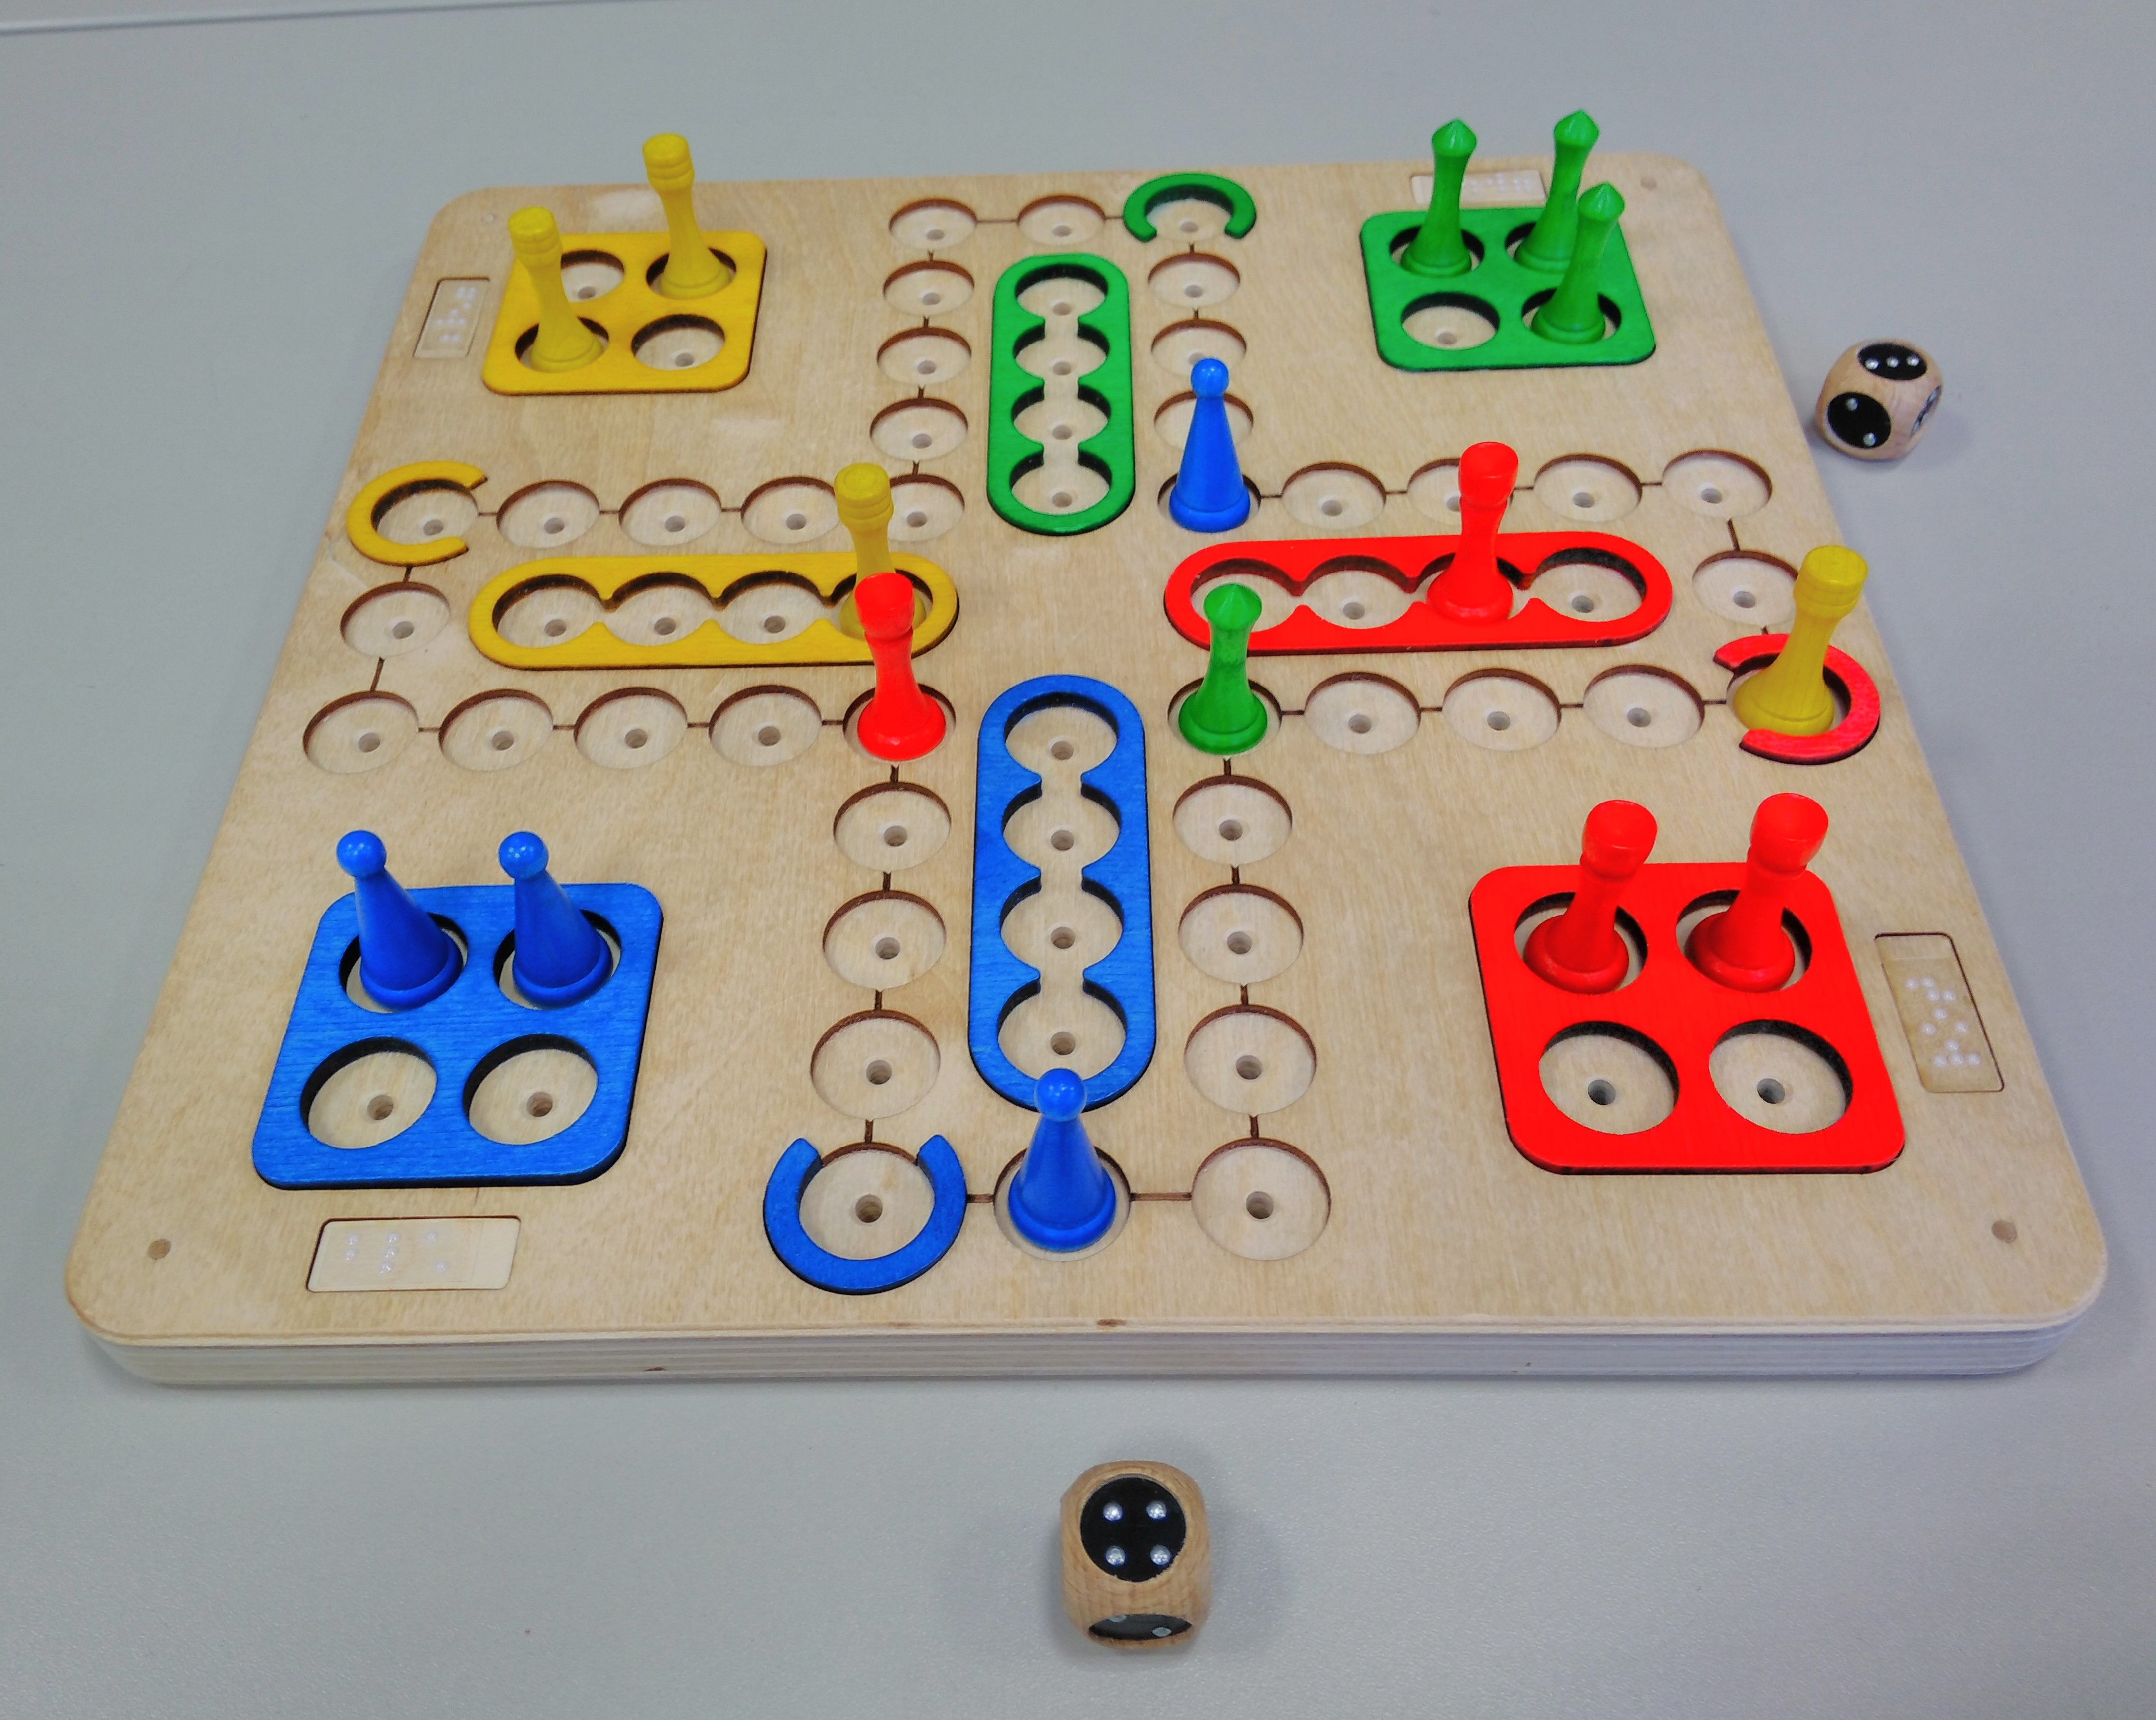 Spiel mit farbigen, markierten Feldern, farbige Spielfiguren zum Stecken und unterschiedlichen Kopfformen, taktiler Würfel